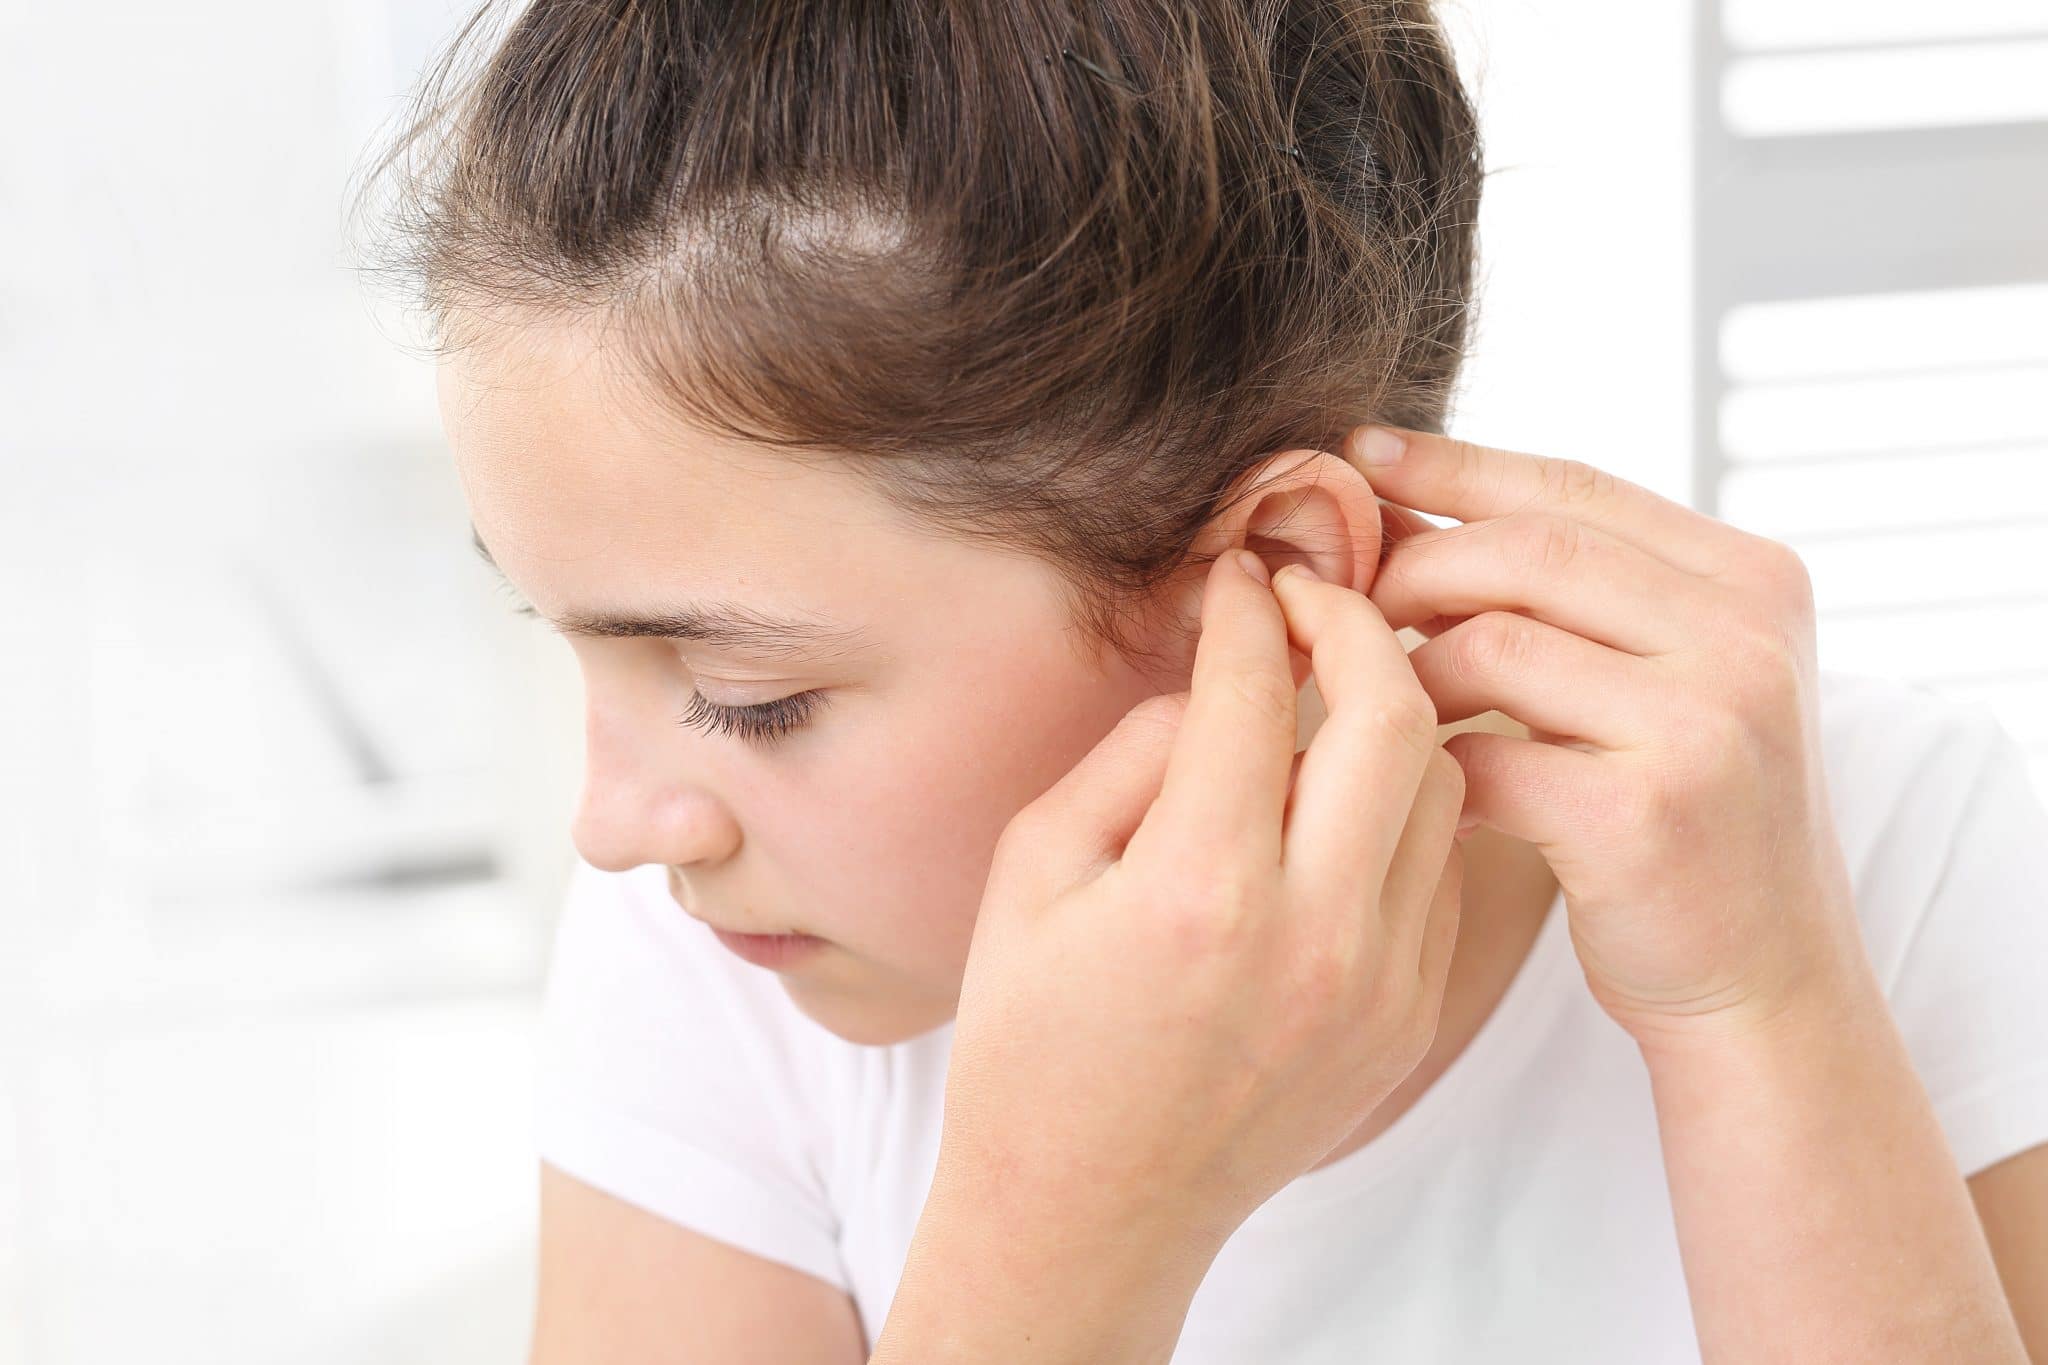 Une personne insérant un appareil de soins auditifs dans son oreille.